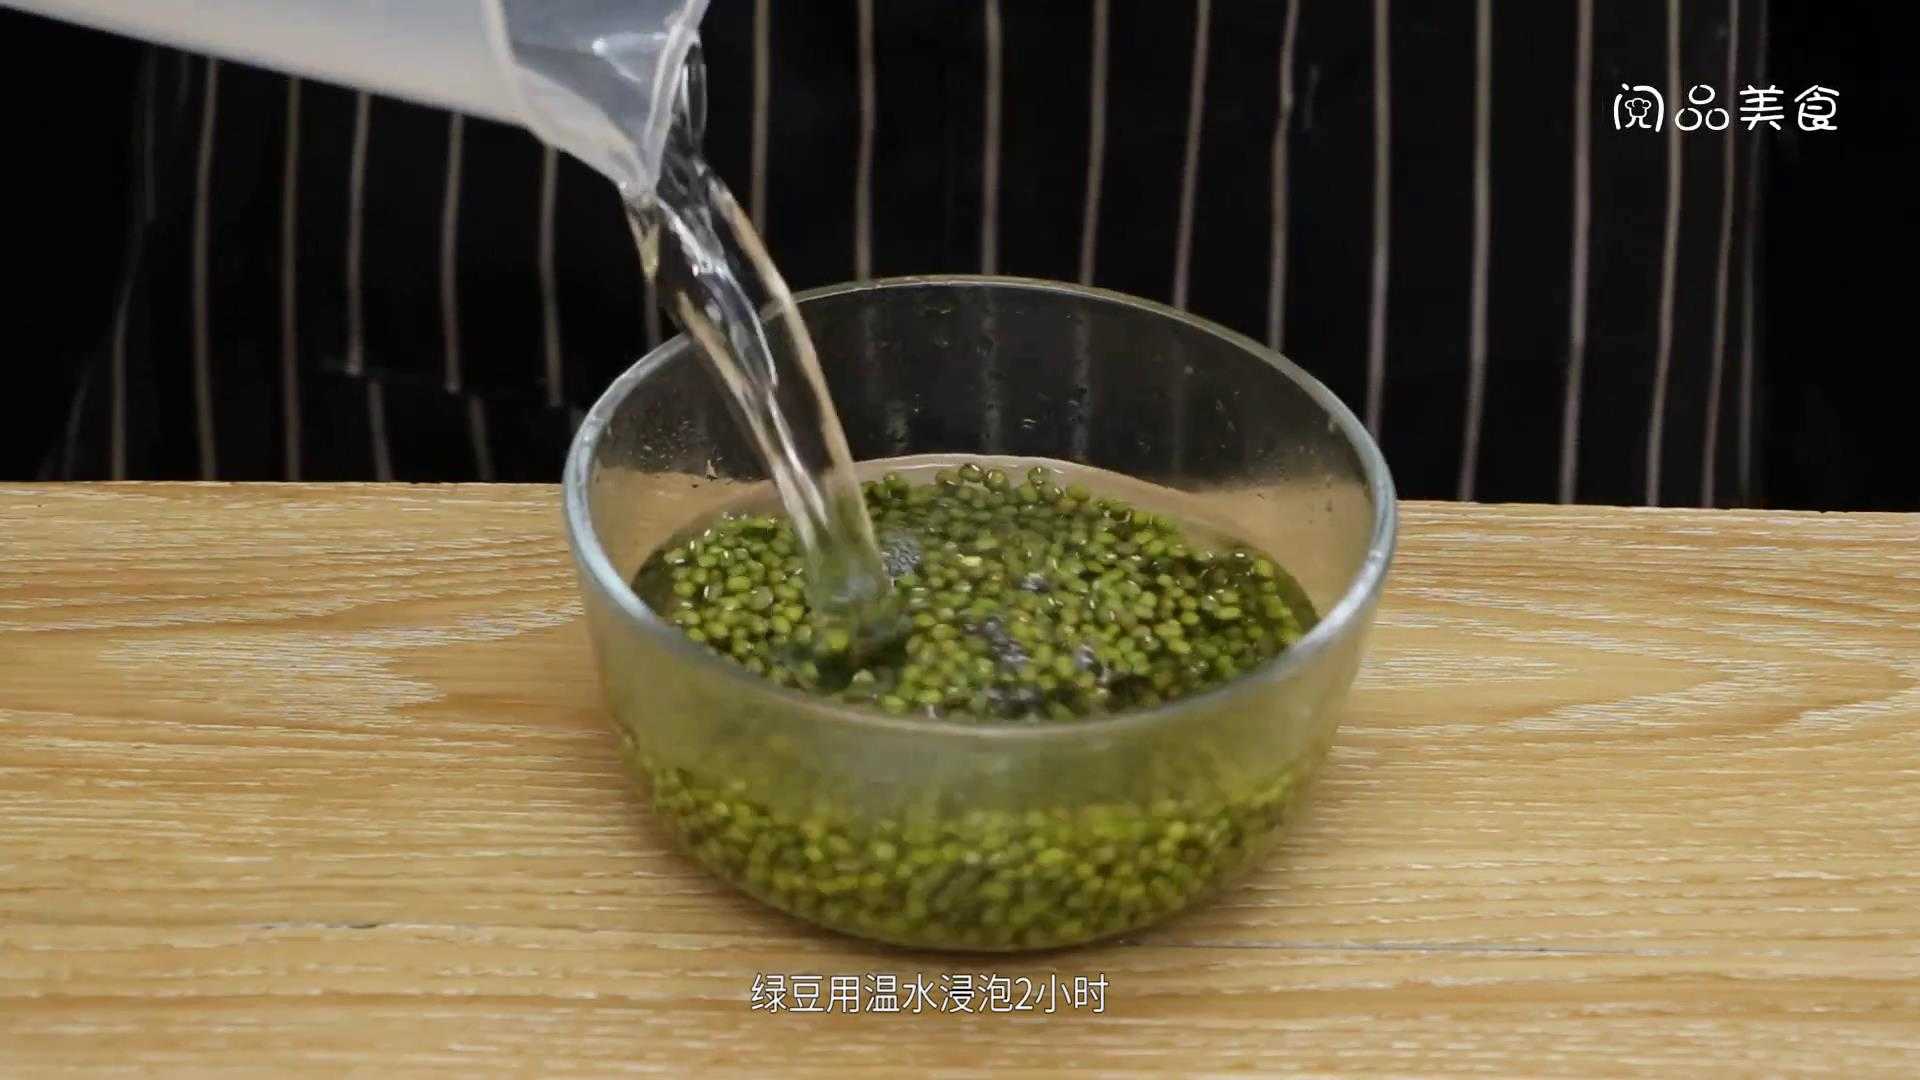 绿豆汁的做法 绿豆汁怎么做好吃